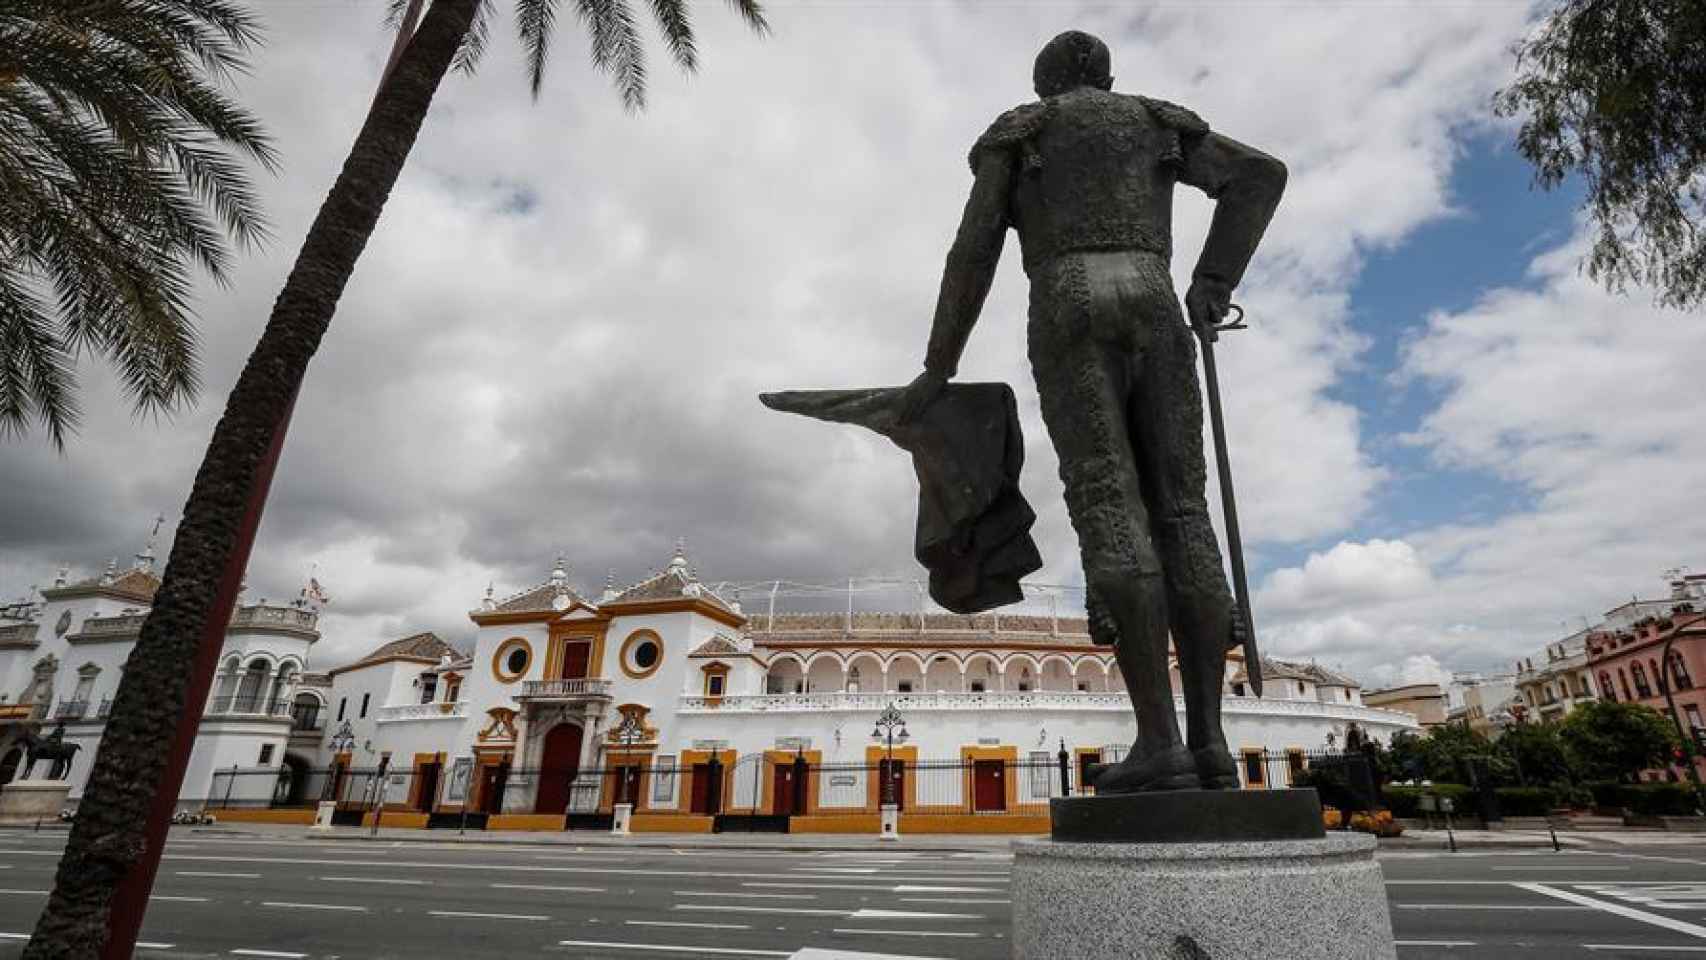 Plaza de toros de la Real Maestranza de Sevilla desde la escultura del diestro Pepe Luis Vázquez en un Paseo de Colón vacío.